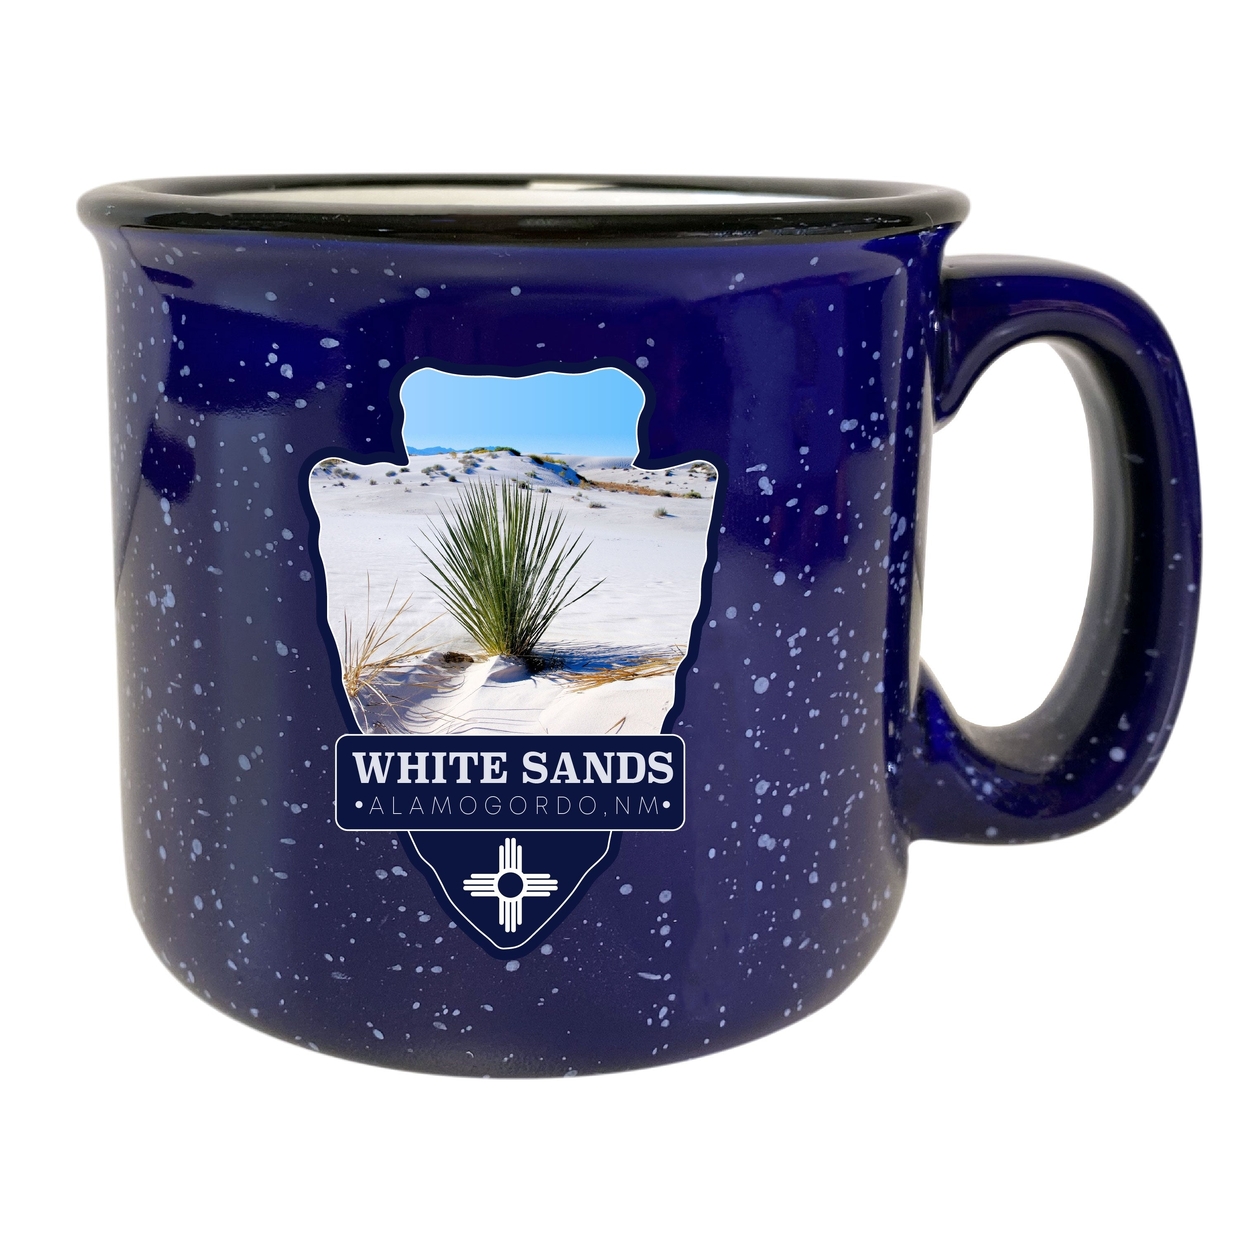 White Sands Alamogordo New Mexico 16 Oz Navy Speckled Ceramic Camper Coffee Mug Choice Of Design - Design C